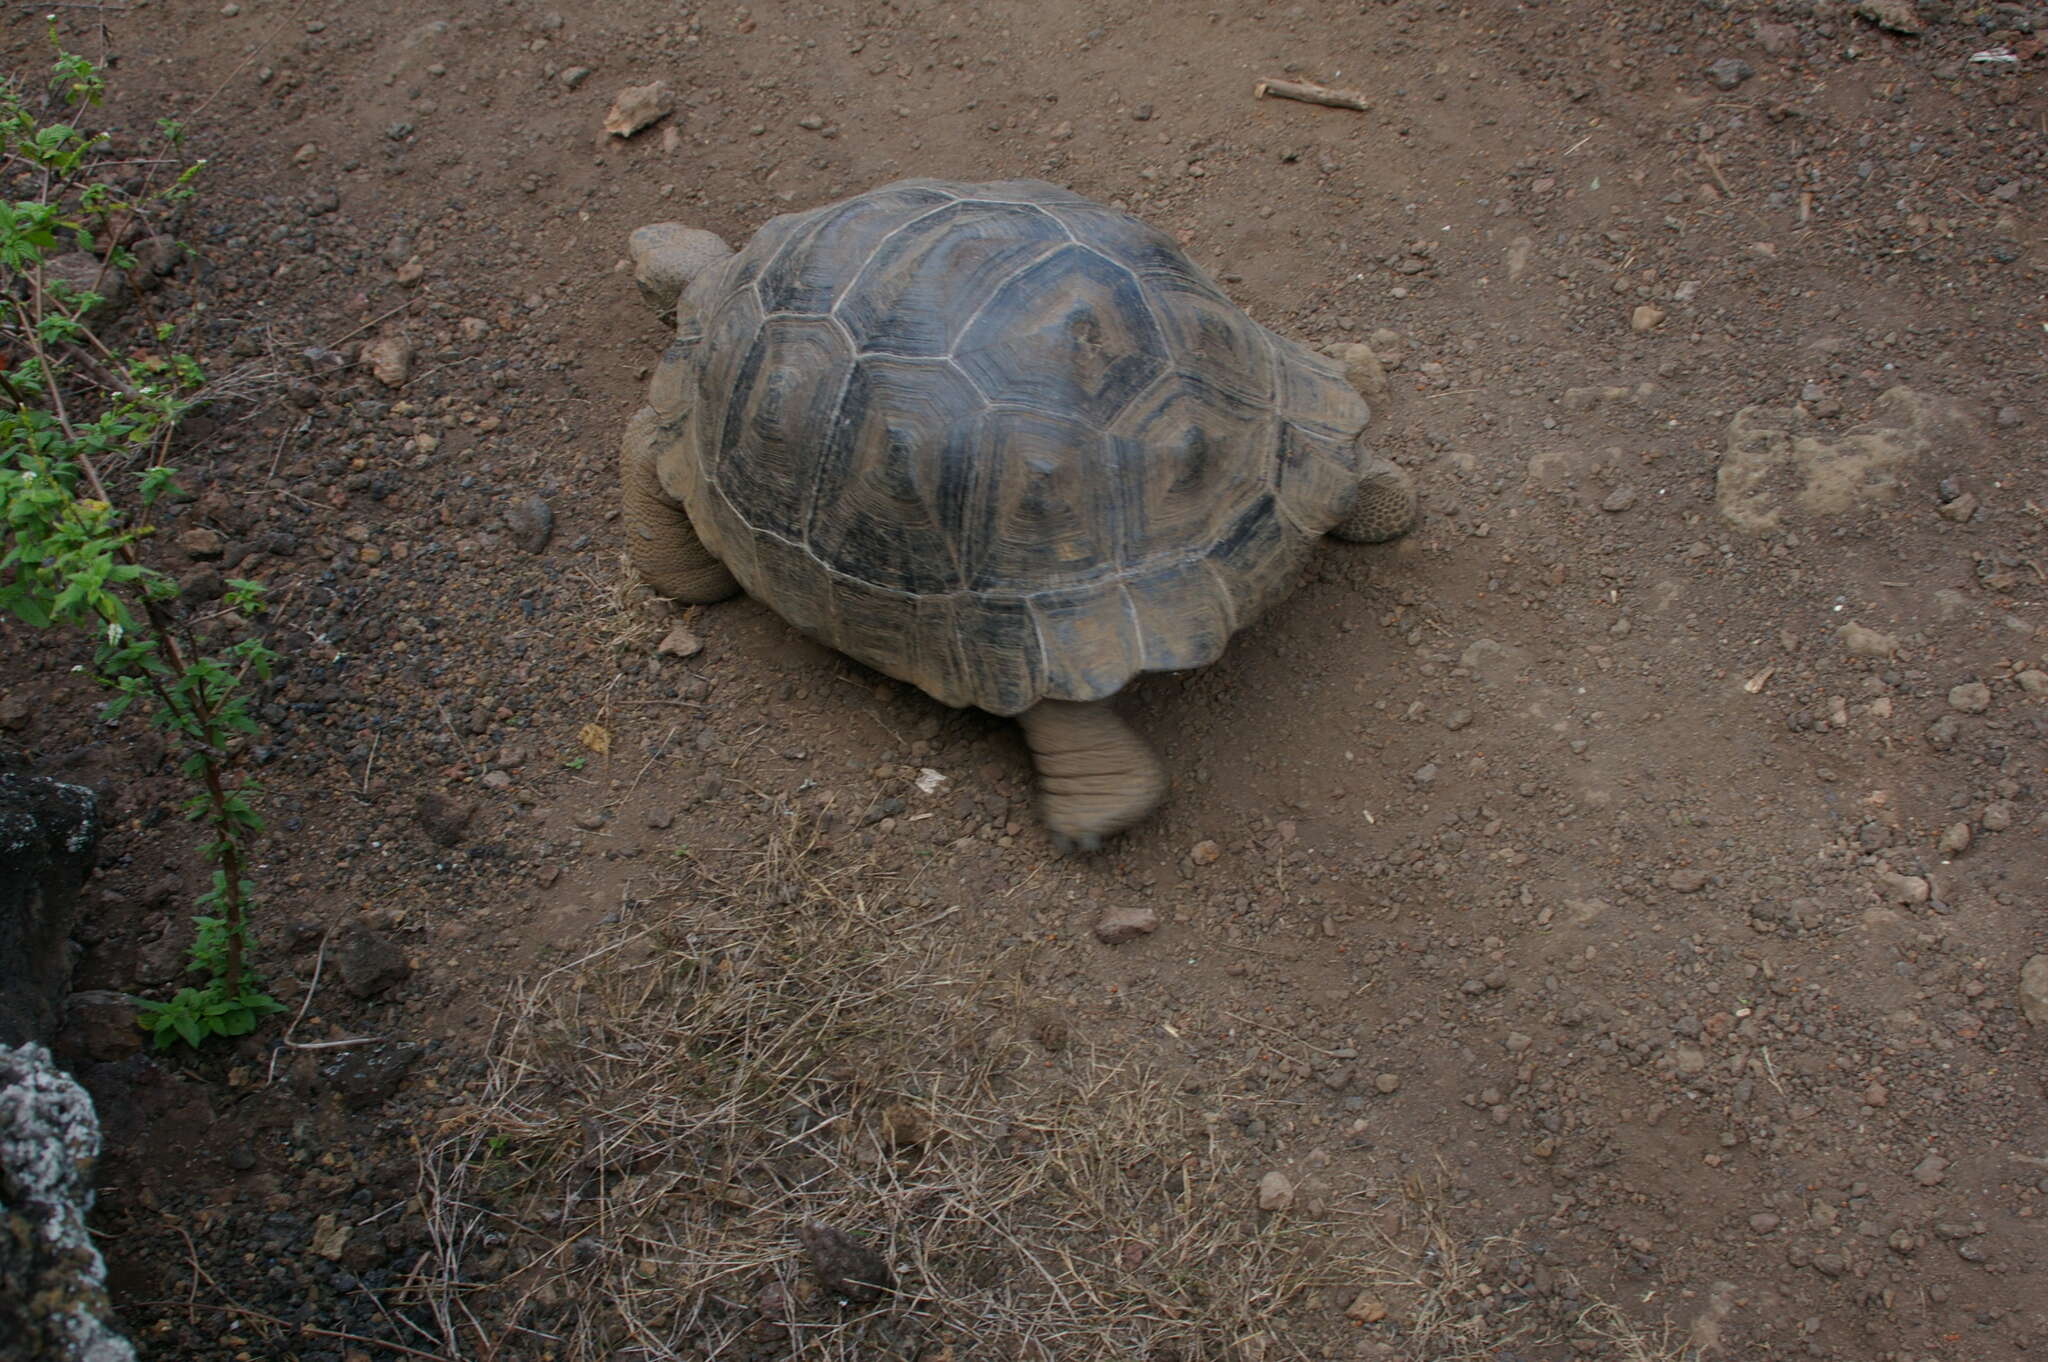 Image of Sierra Negra giant tortoise